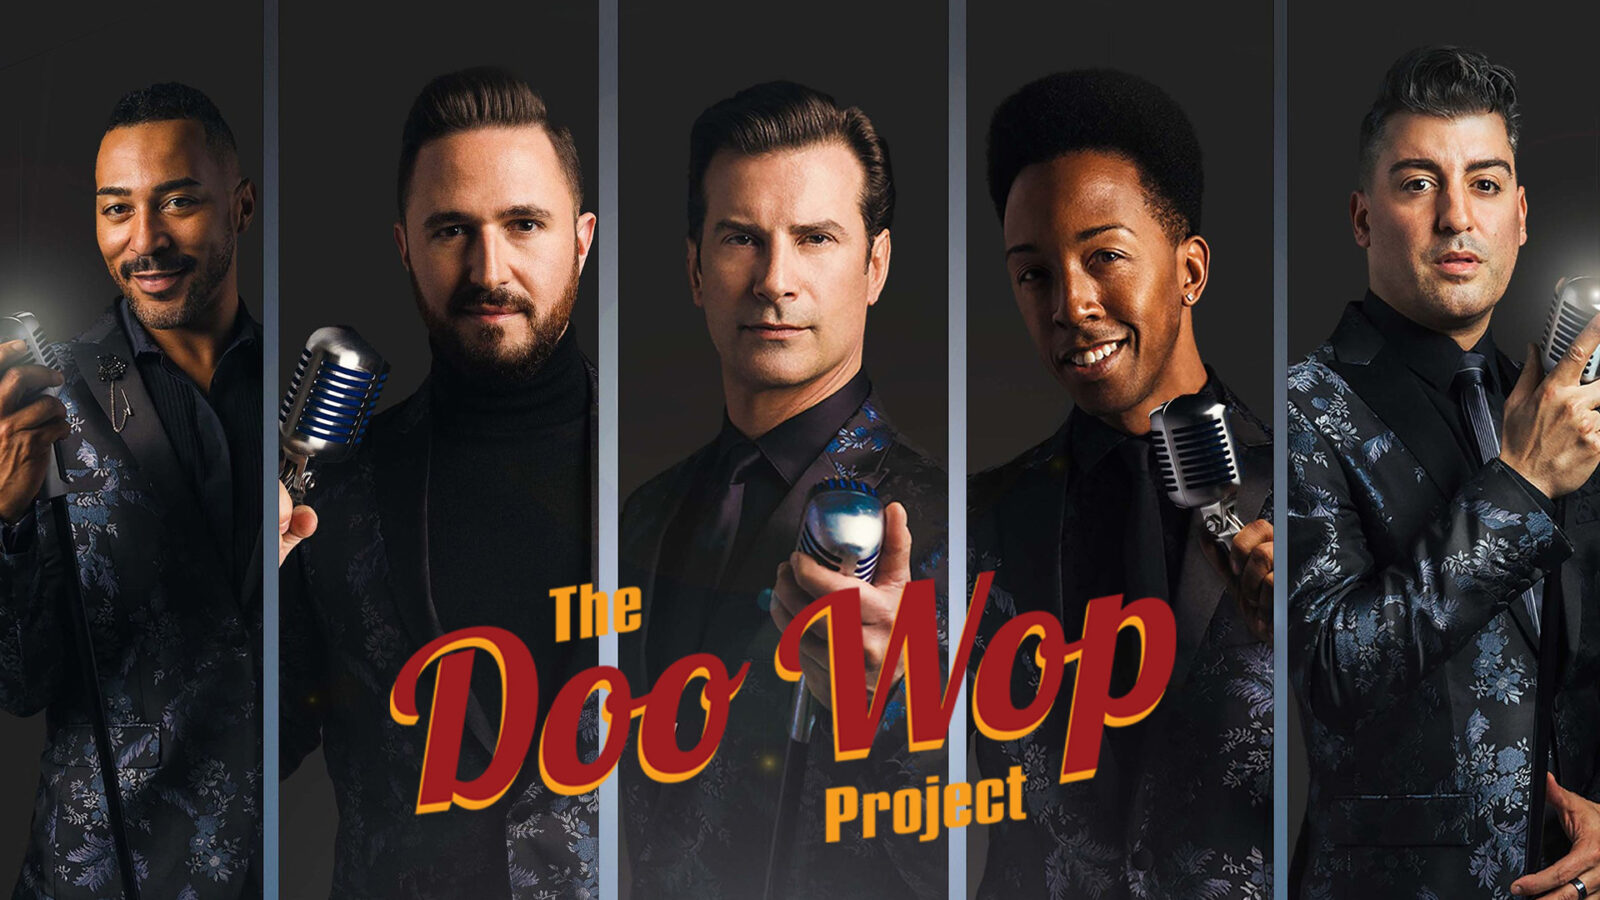 Doo Wop Project